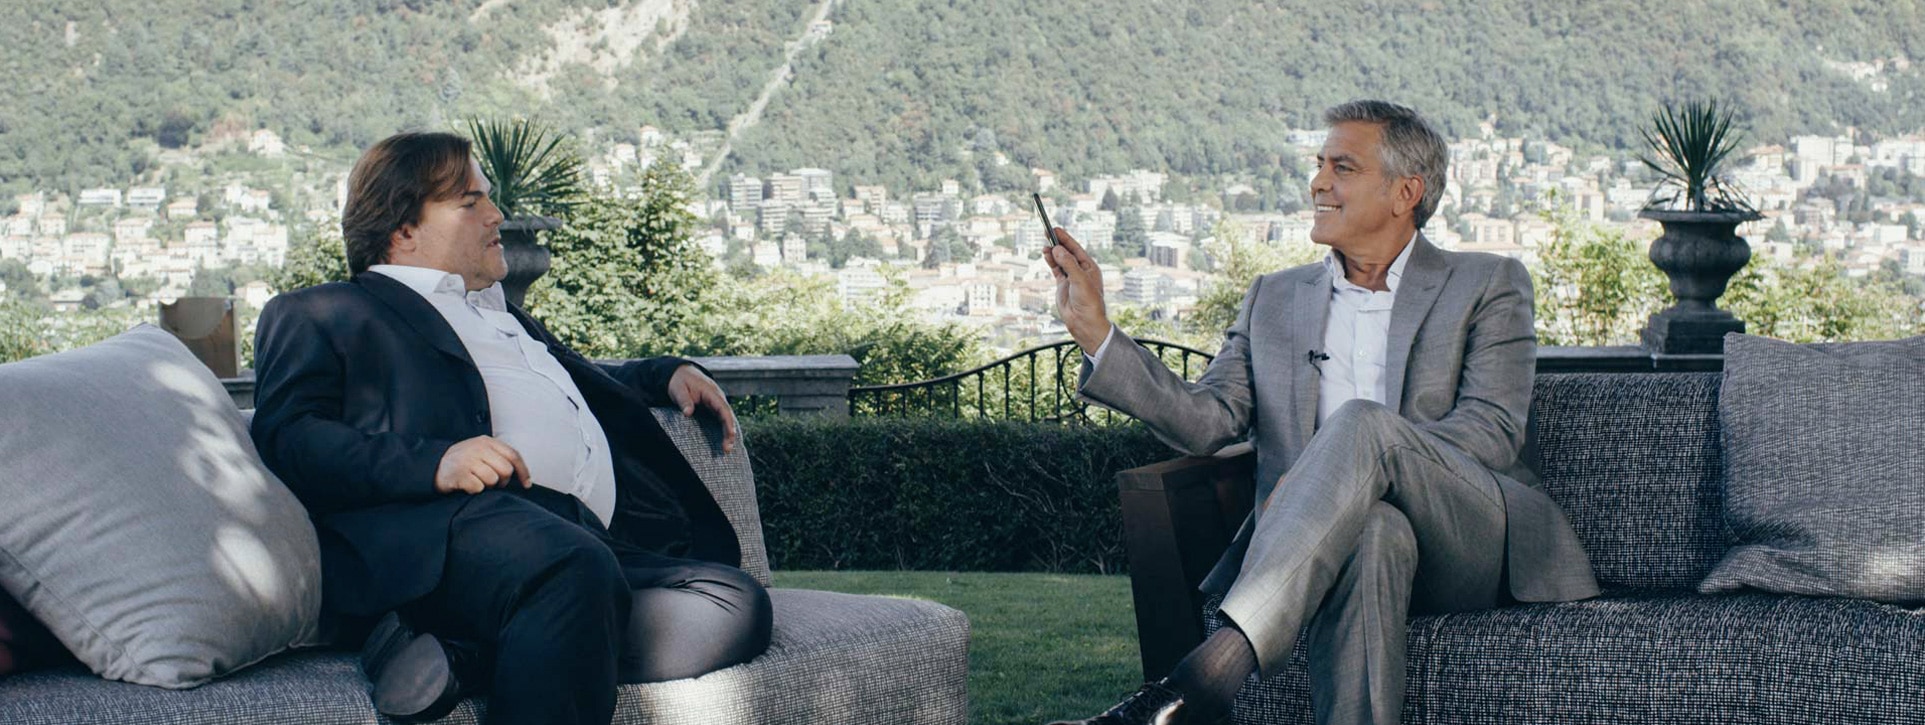 Le job le plus stimulant ? Interviewer George Clooney et Jack Black - Riot House